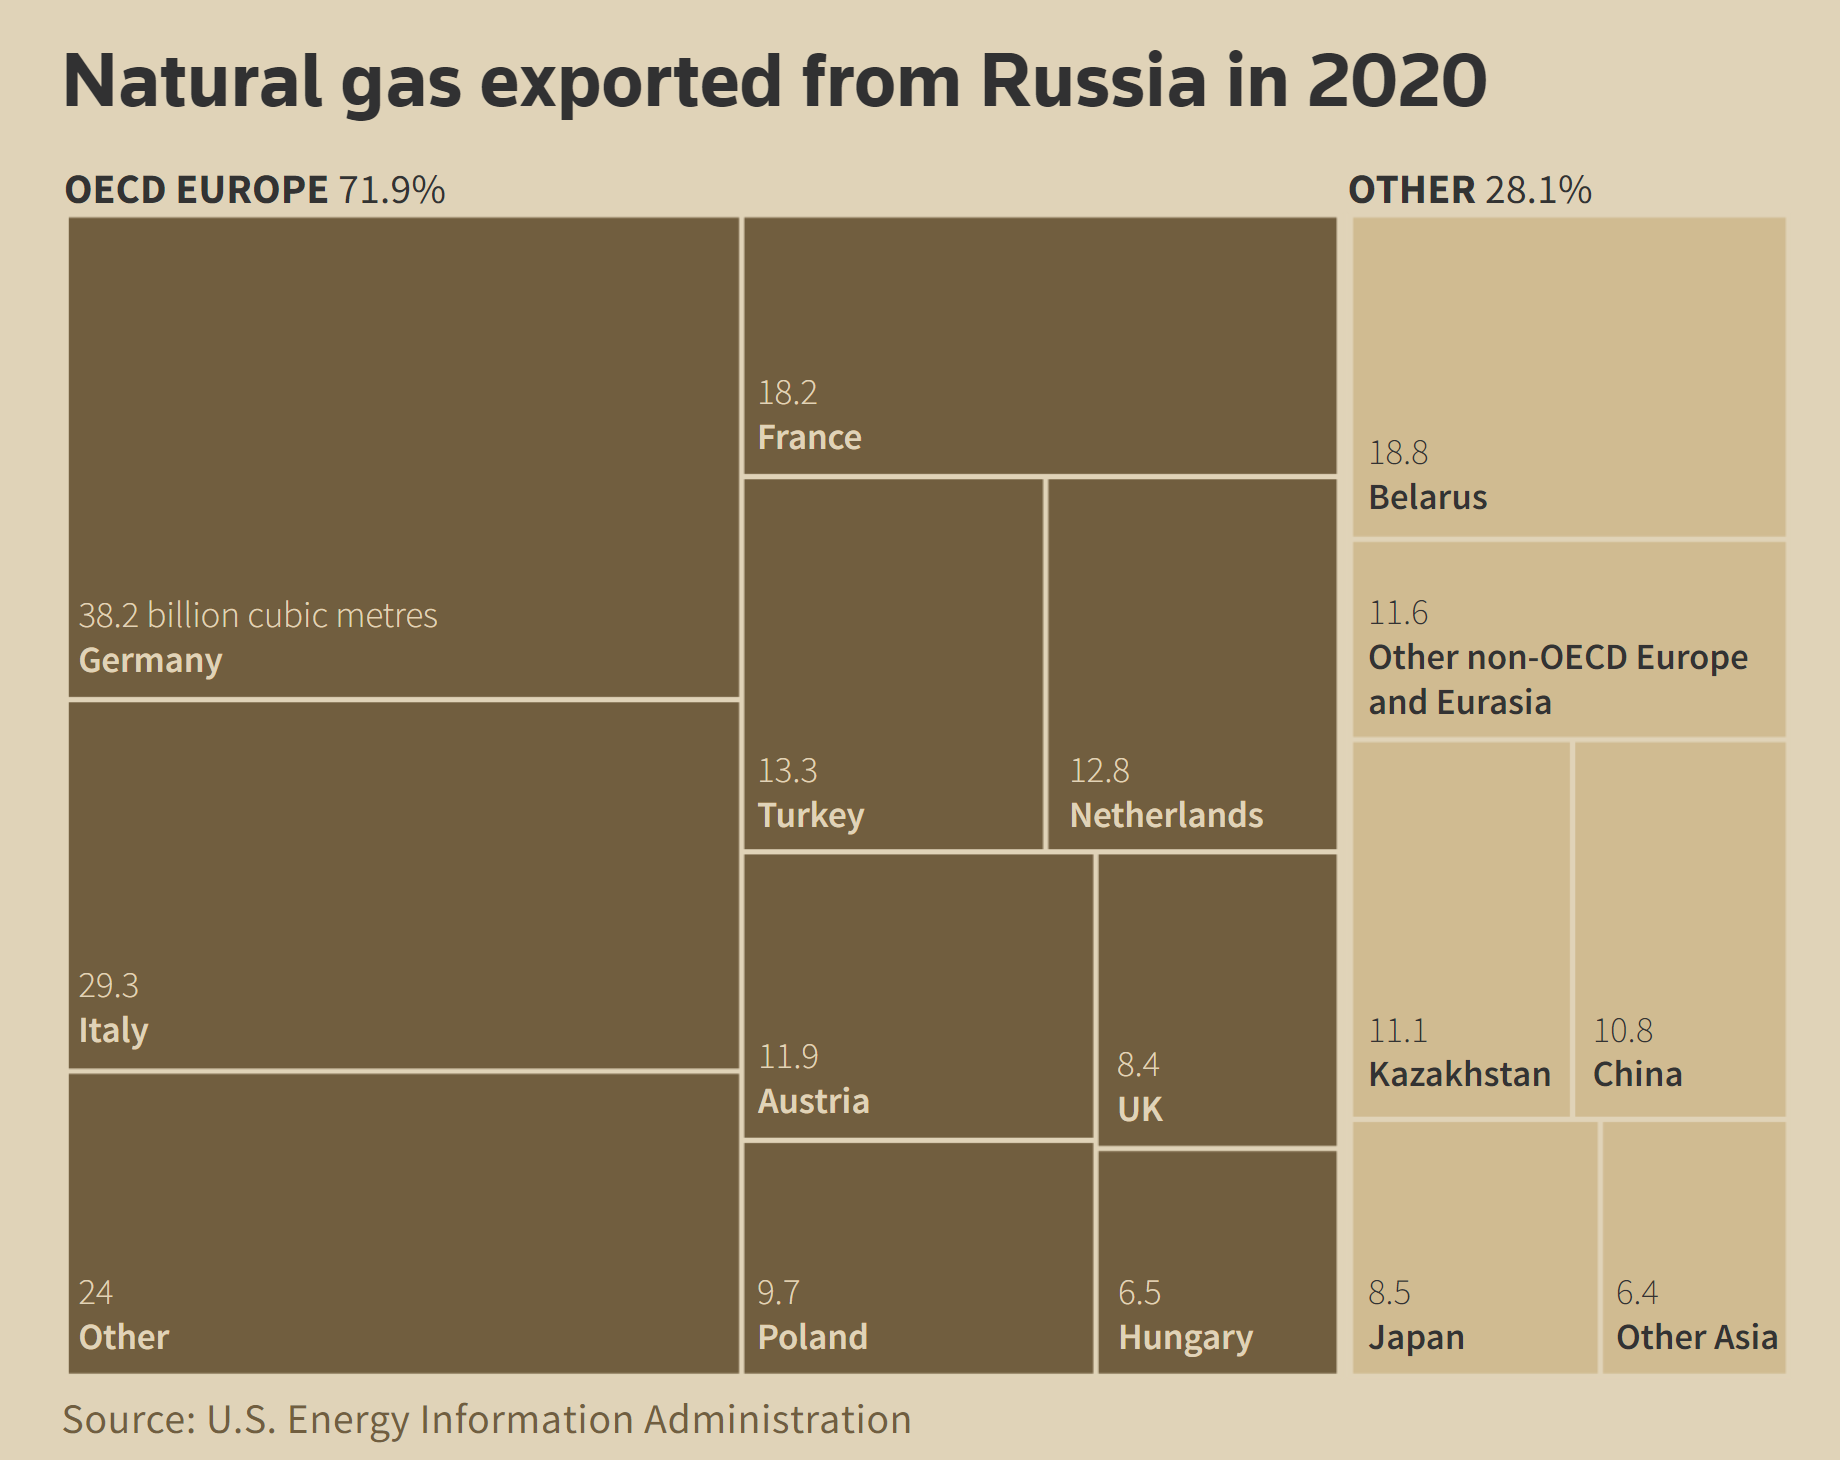 2019年俄罗斯天然气公司将建成3条大型管道！ - 能源界